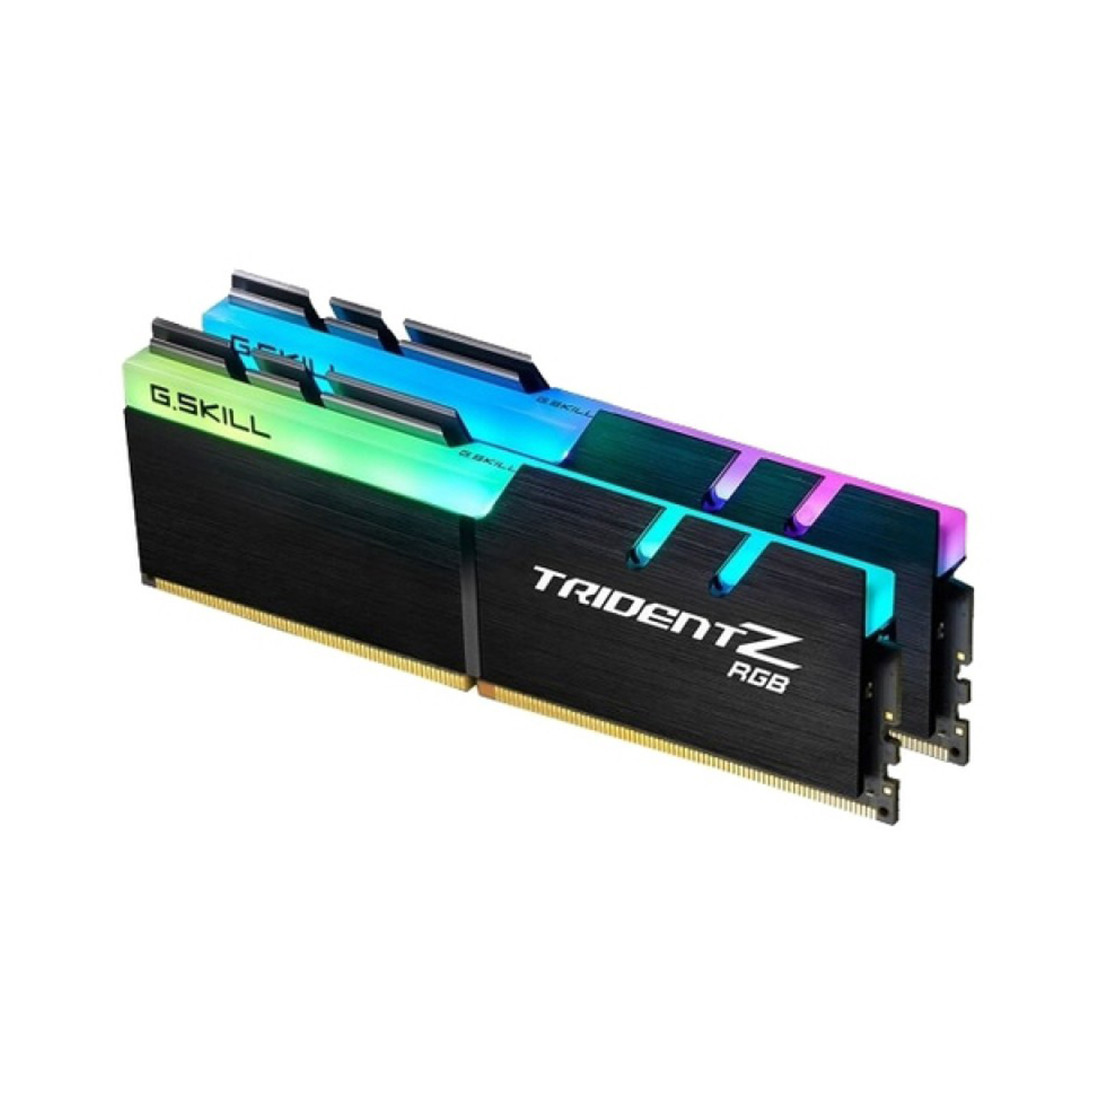 Комплект модулей памяти  G.SKILL  TridentZ RGB F4-3000C16D-16GTZR (Kit 2x8GB)  DDR4  16GB  DIMM   Черный